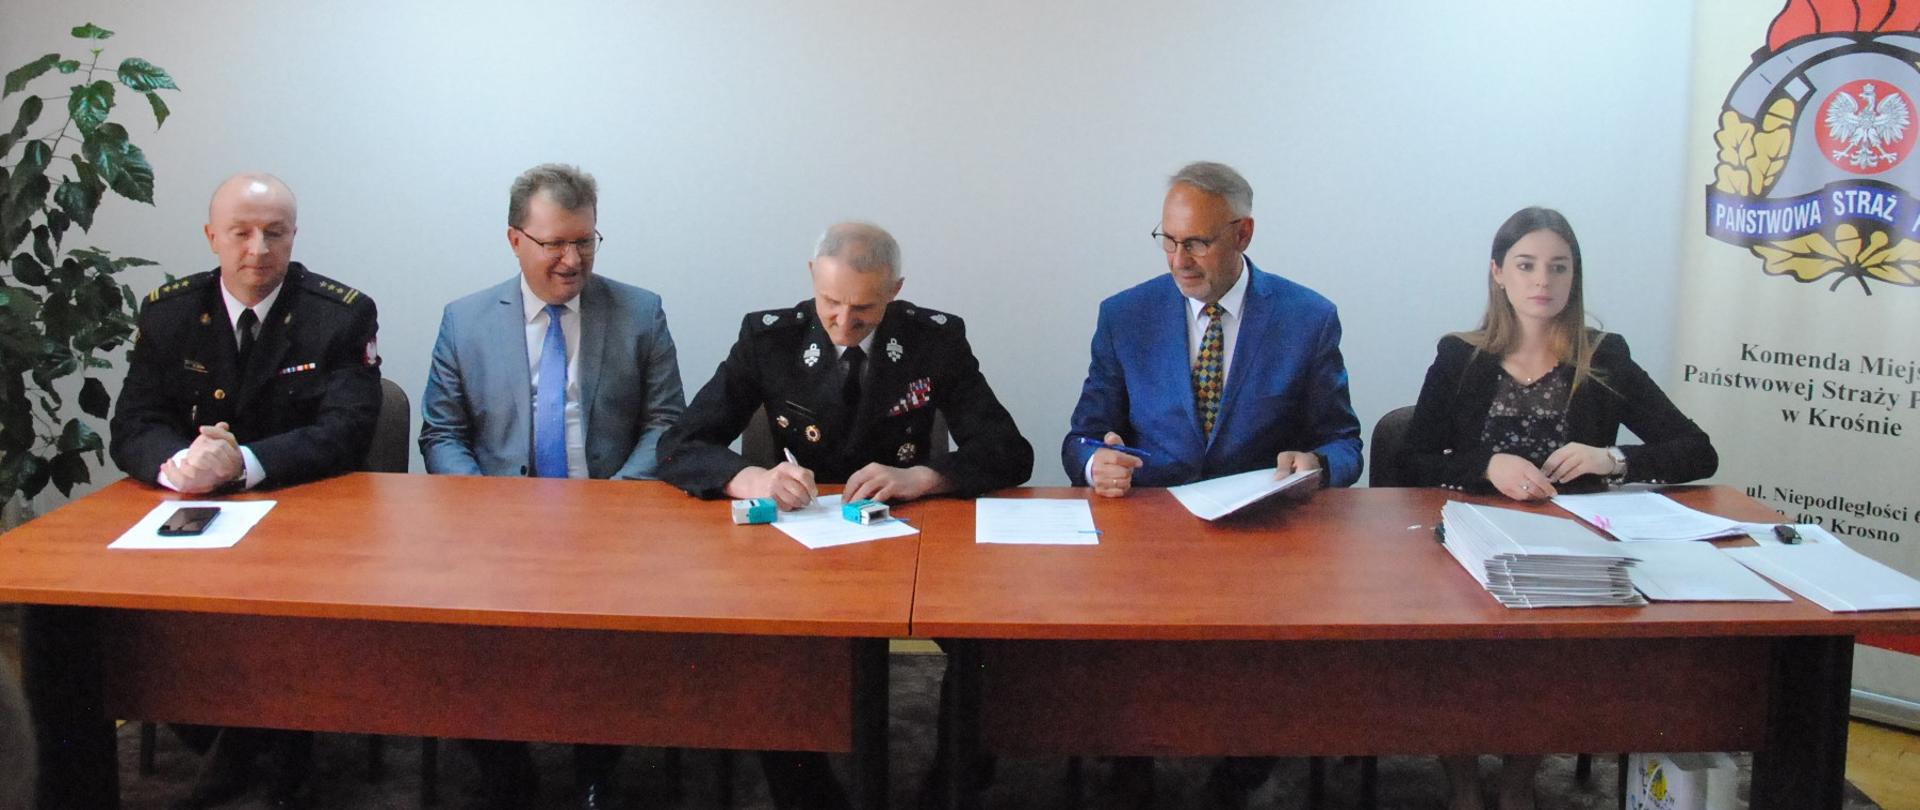 Zdjęcie przedstawia 5 osób siedzących za stołem prezydialnym w Sali konferencyjnej KM PSP Krosno składających podpisy pod umowami na dofinansowanie zakupu sprzętu dla jednostek OSP. Za siedzącymi, na białej ścianie widoczne jest godło Polski a z prawe strony logo Państwowej Straży Pożarnej w Krośnie.